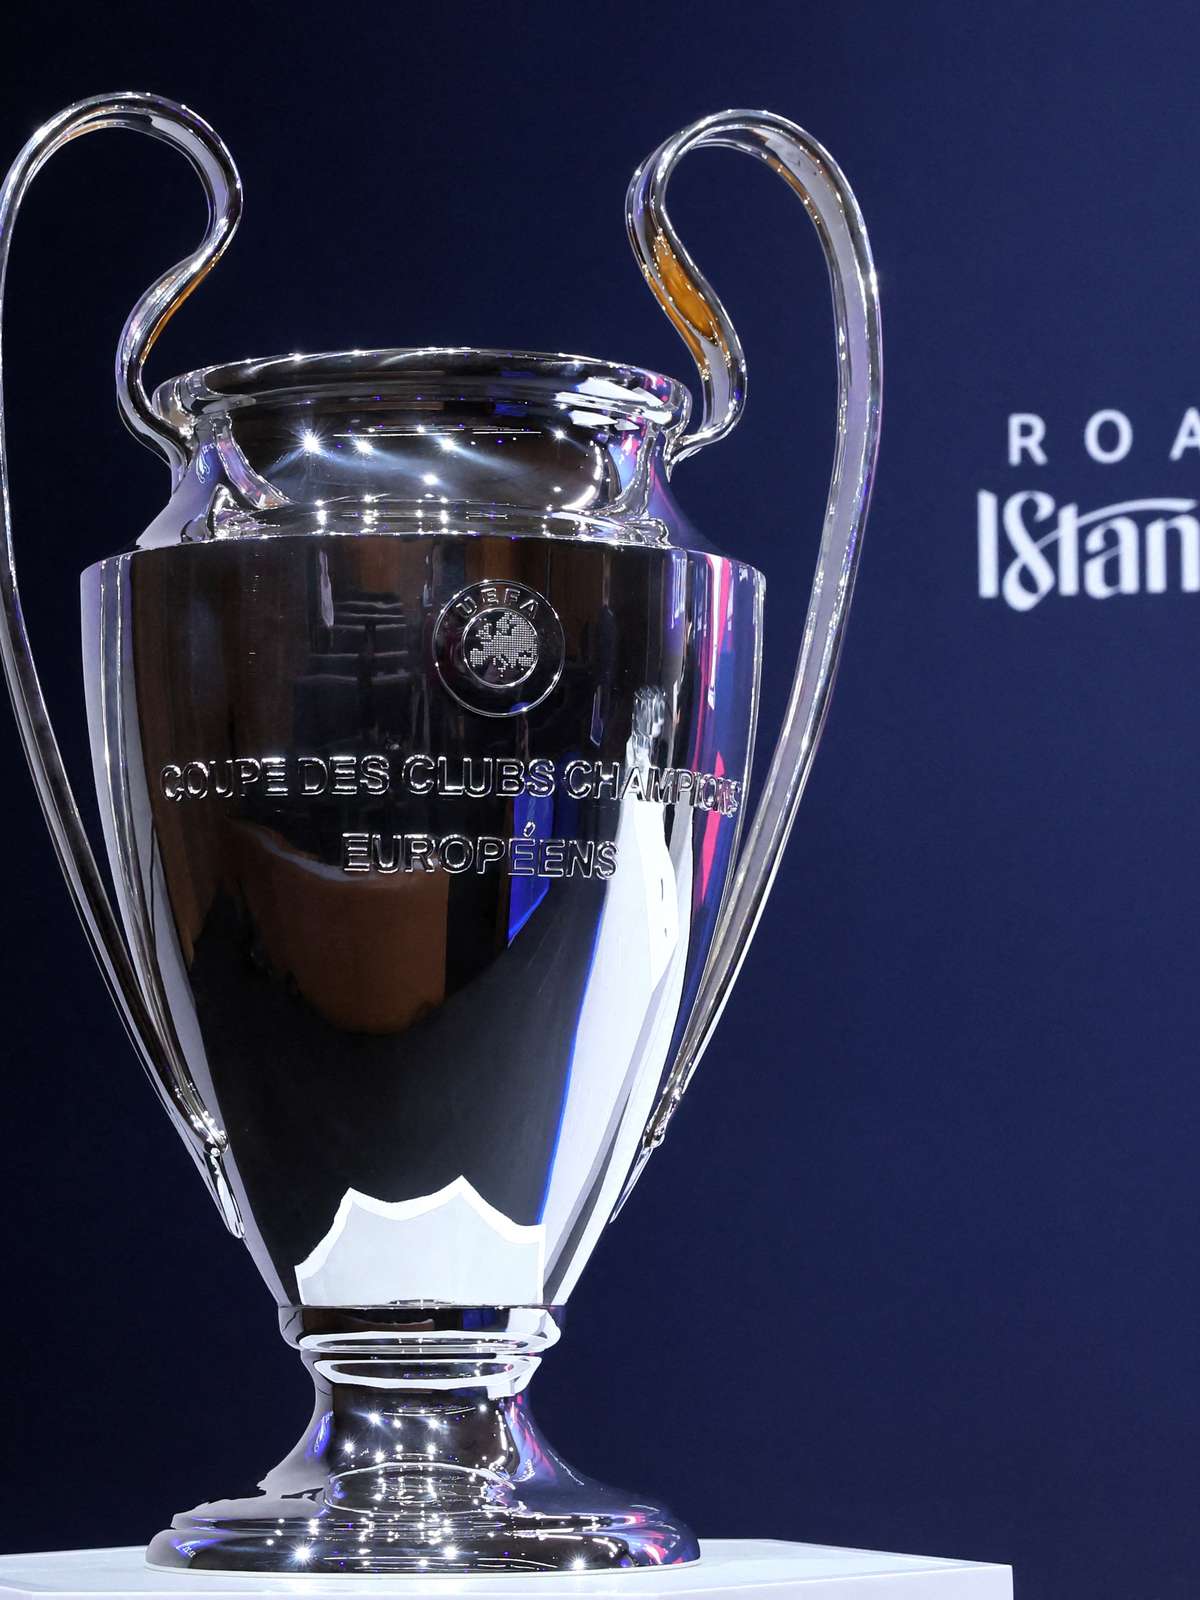 Champions League abre quartas de final com duelos cercados por